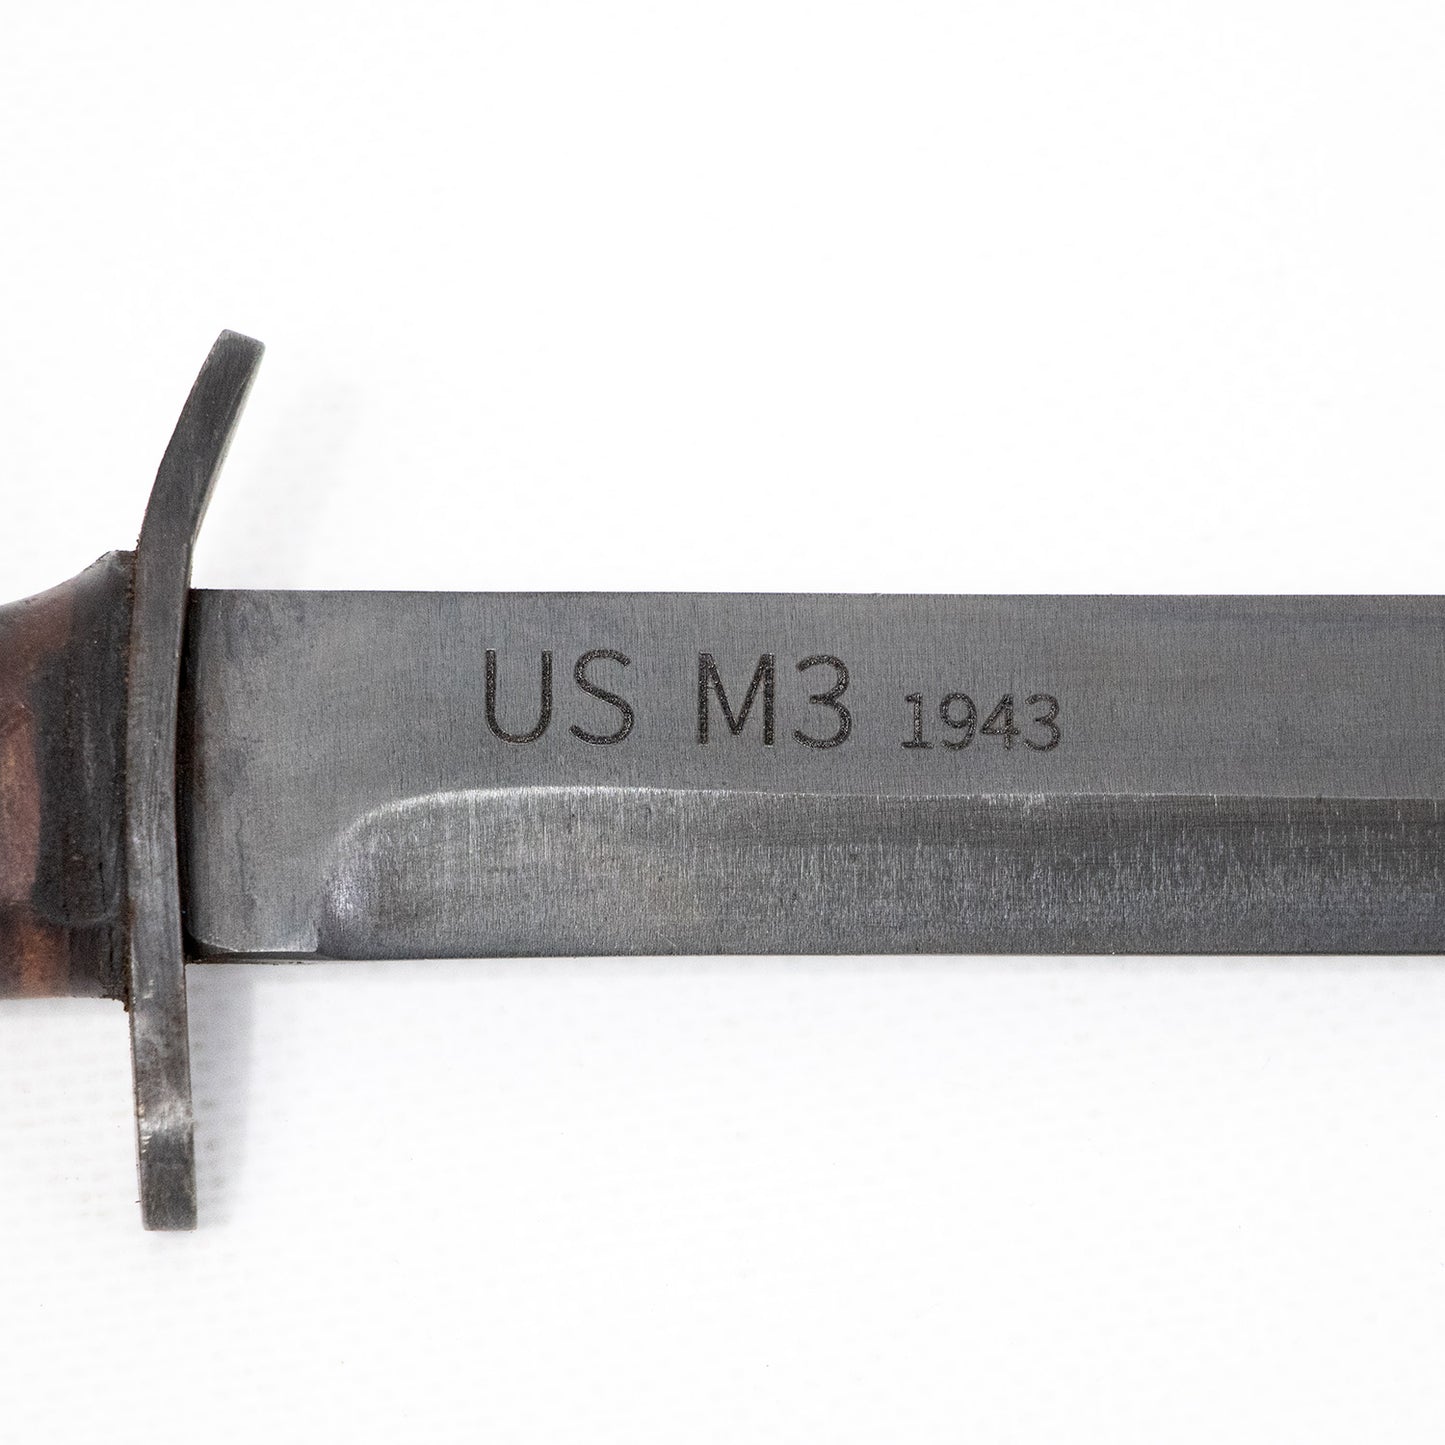 Couteau de combat USM3 US WW2 porté par les soldats US durant la Seconde Guerre Mondiale gros plan du marquage de la lame